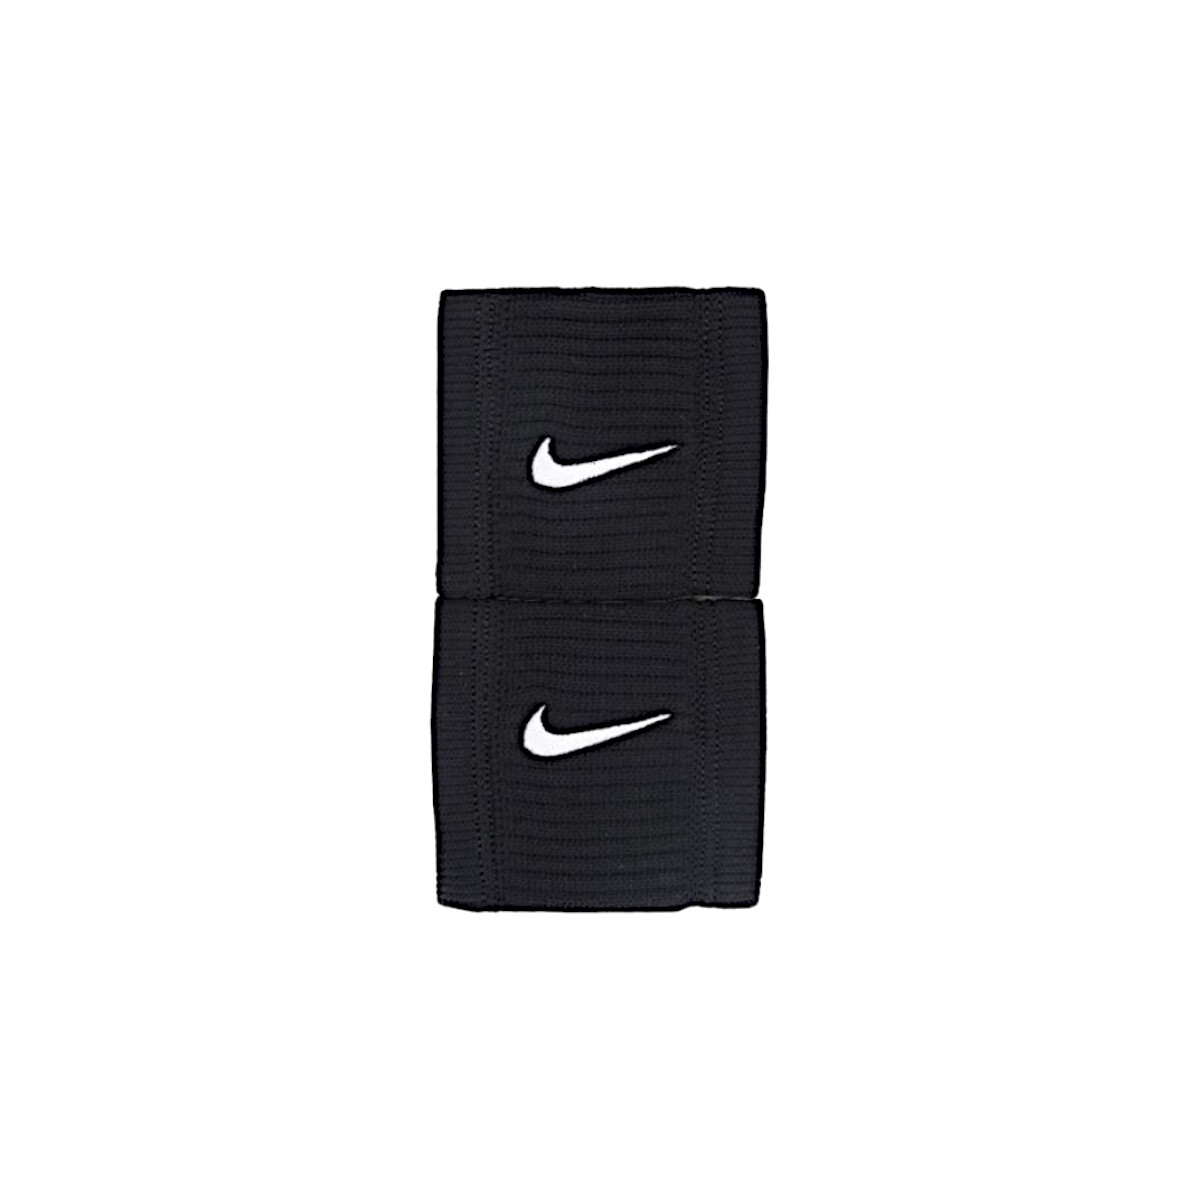 Doplnky Športové doplnky Nike Dri-Fit Reveal Wristbands Čierna